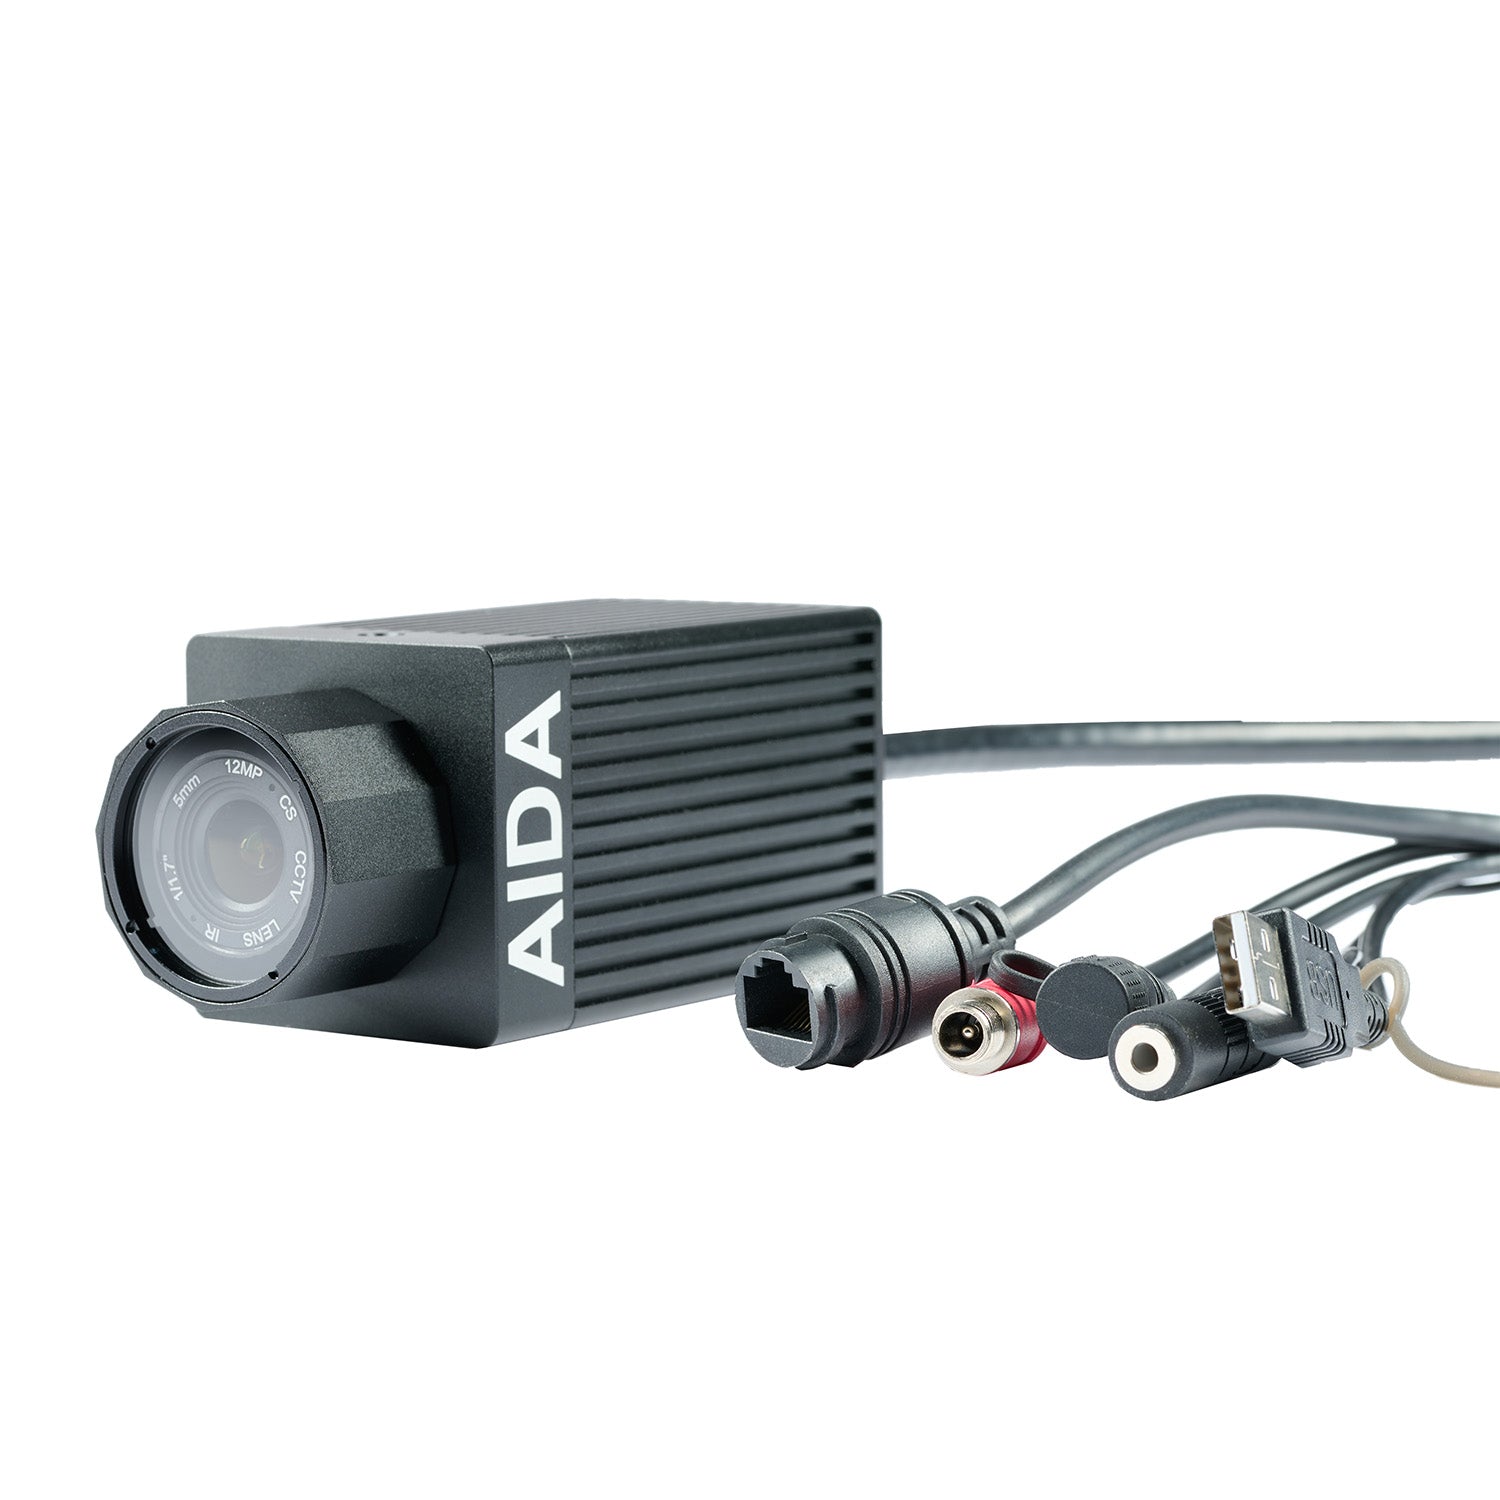 AIDA Imaging UHD-NDI3-IP67 - UHD 4K/60 NDI|HX3 Weatherproof POV Camera, connectors